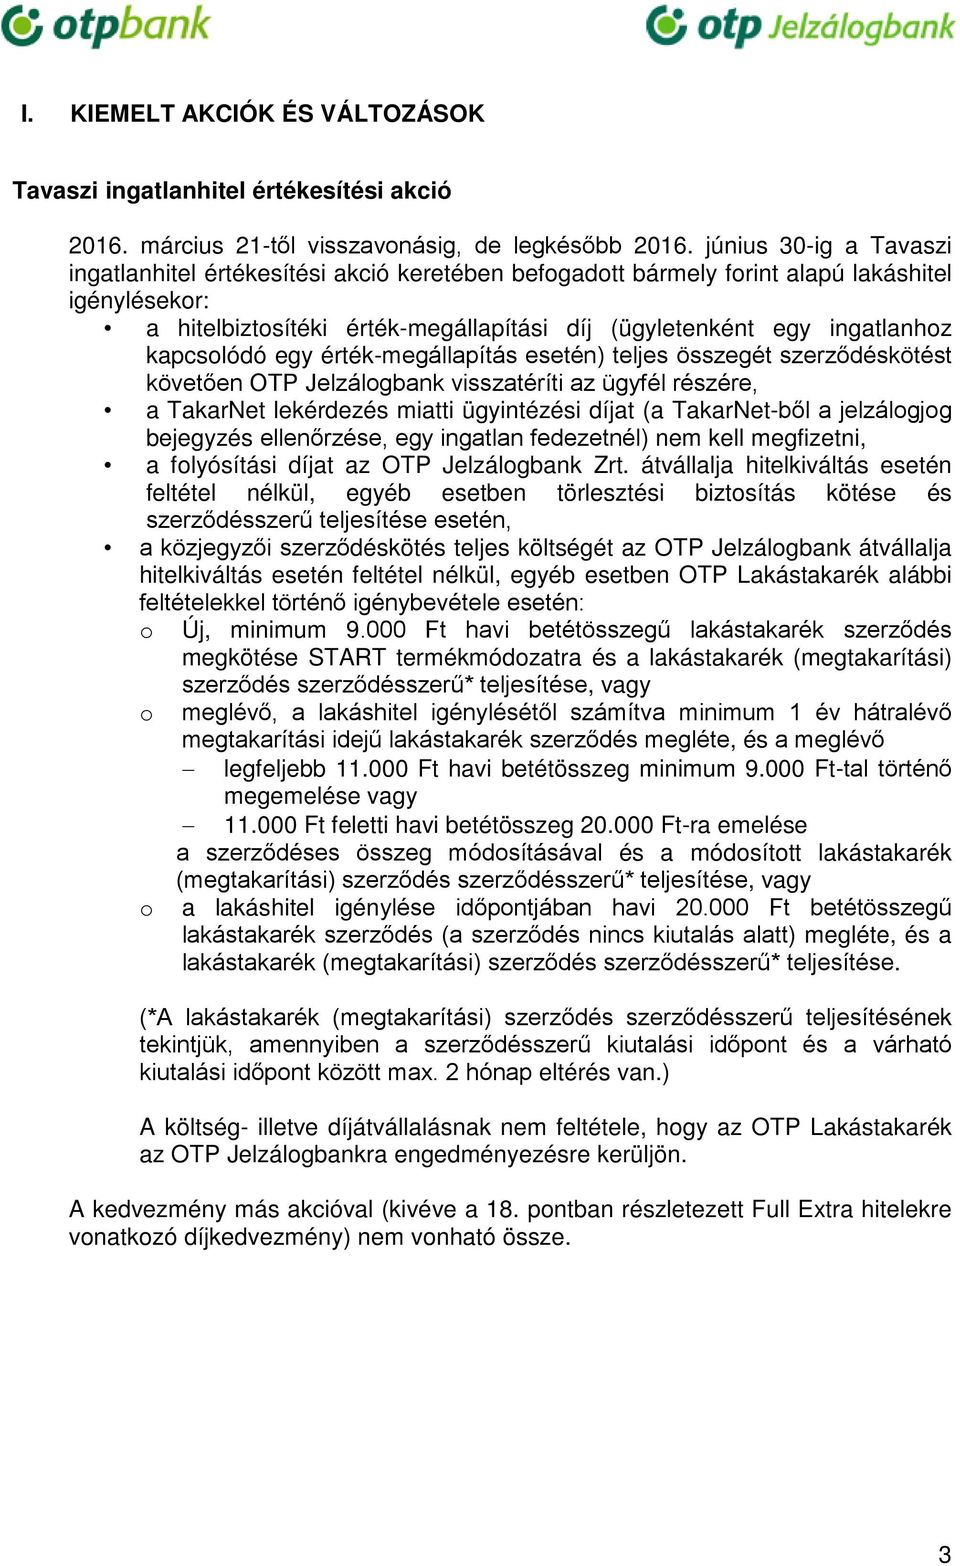 kapcsolódó egy érték-megállapítás esetén) teljes összegét szerződéskötést követően OTP Jelzálogbank visszatéríti az ügyfél részére, a TakarNet lekérdezés miatti ügyintézési díjat (a TakarNet-ből a